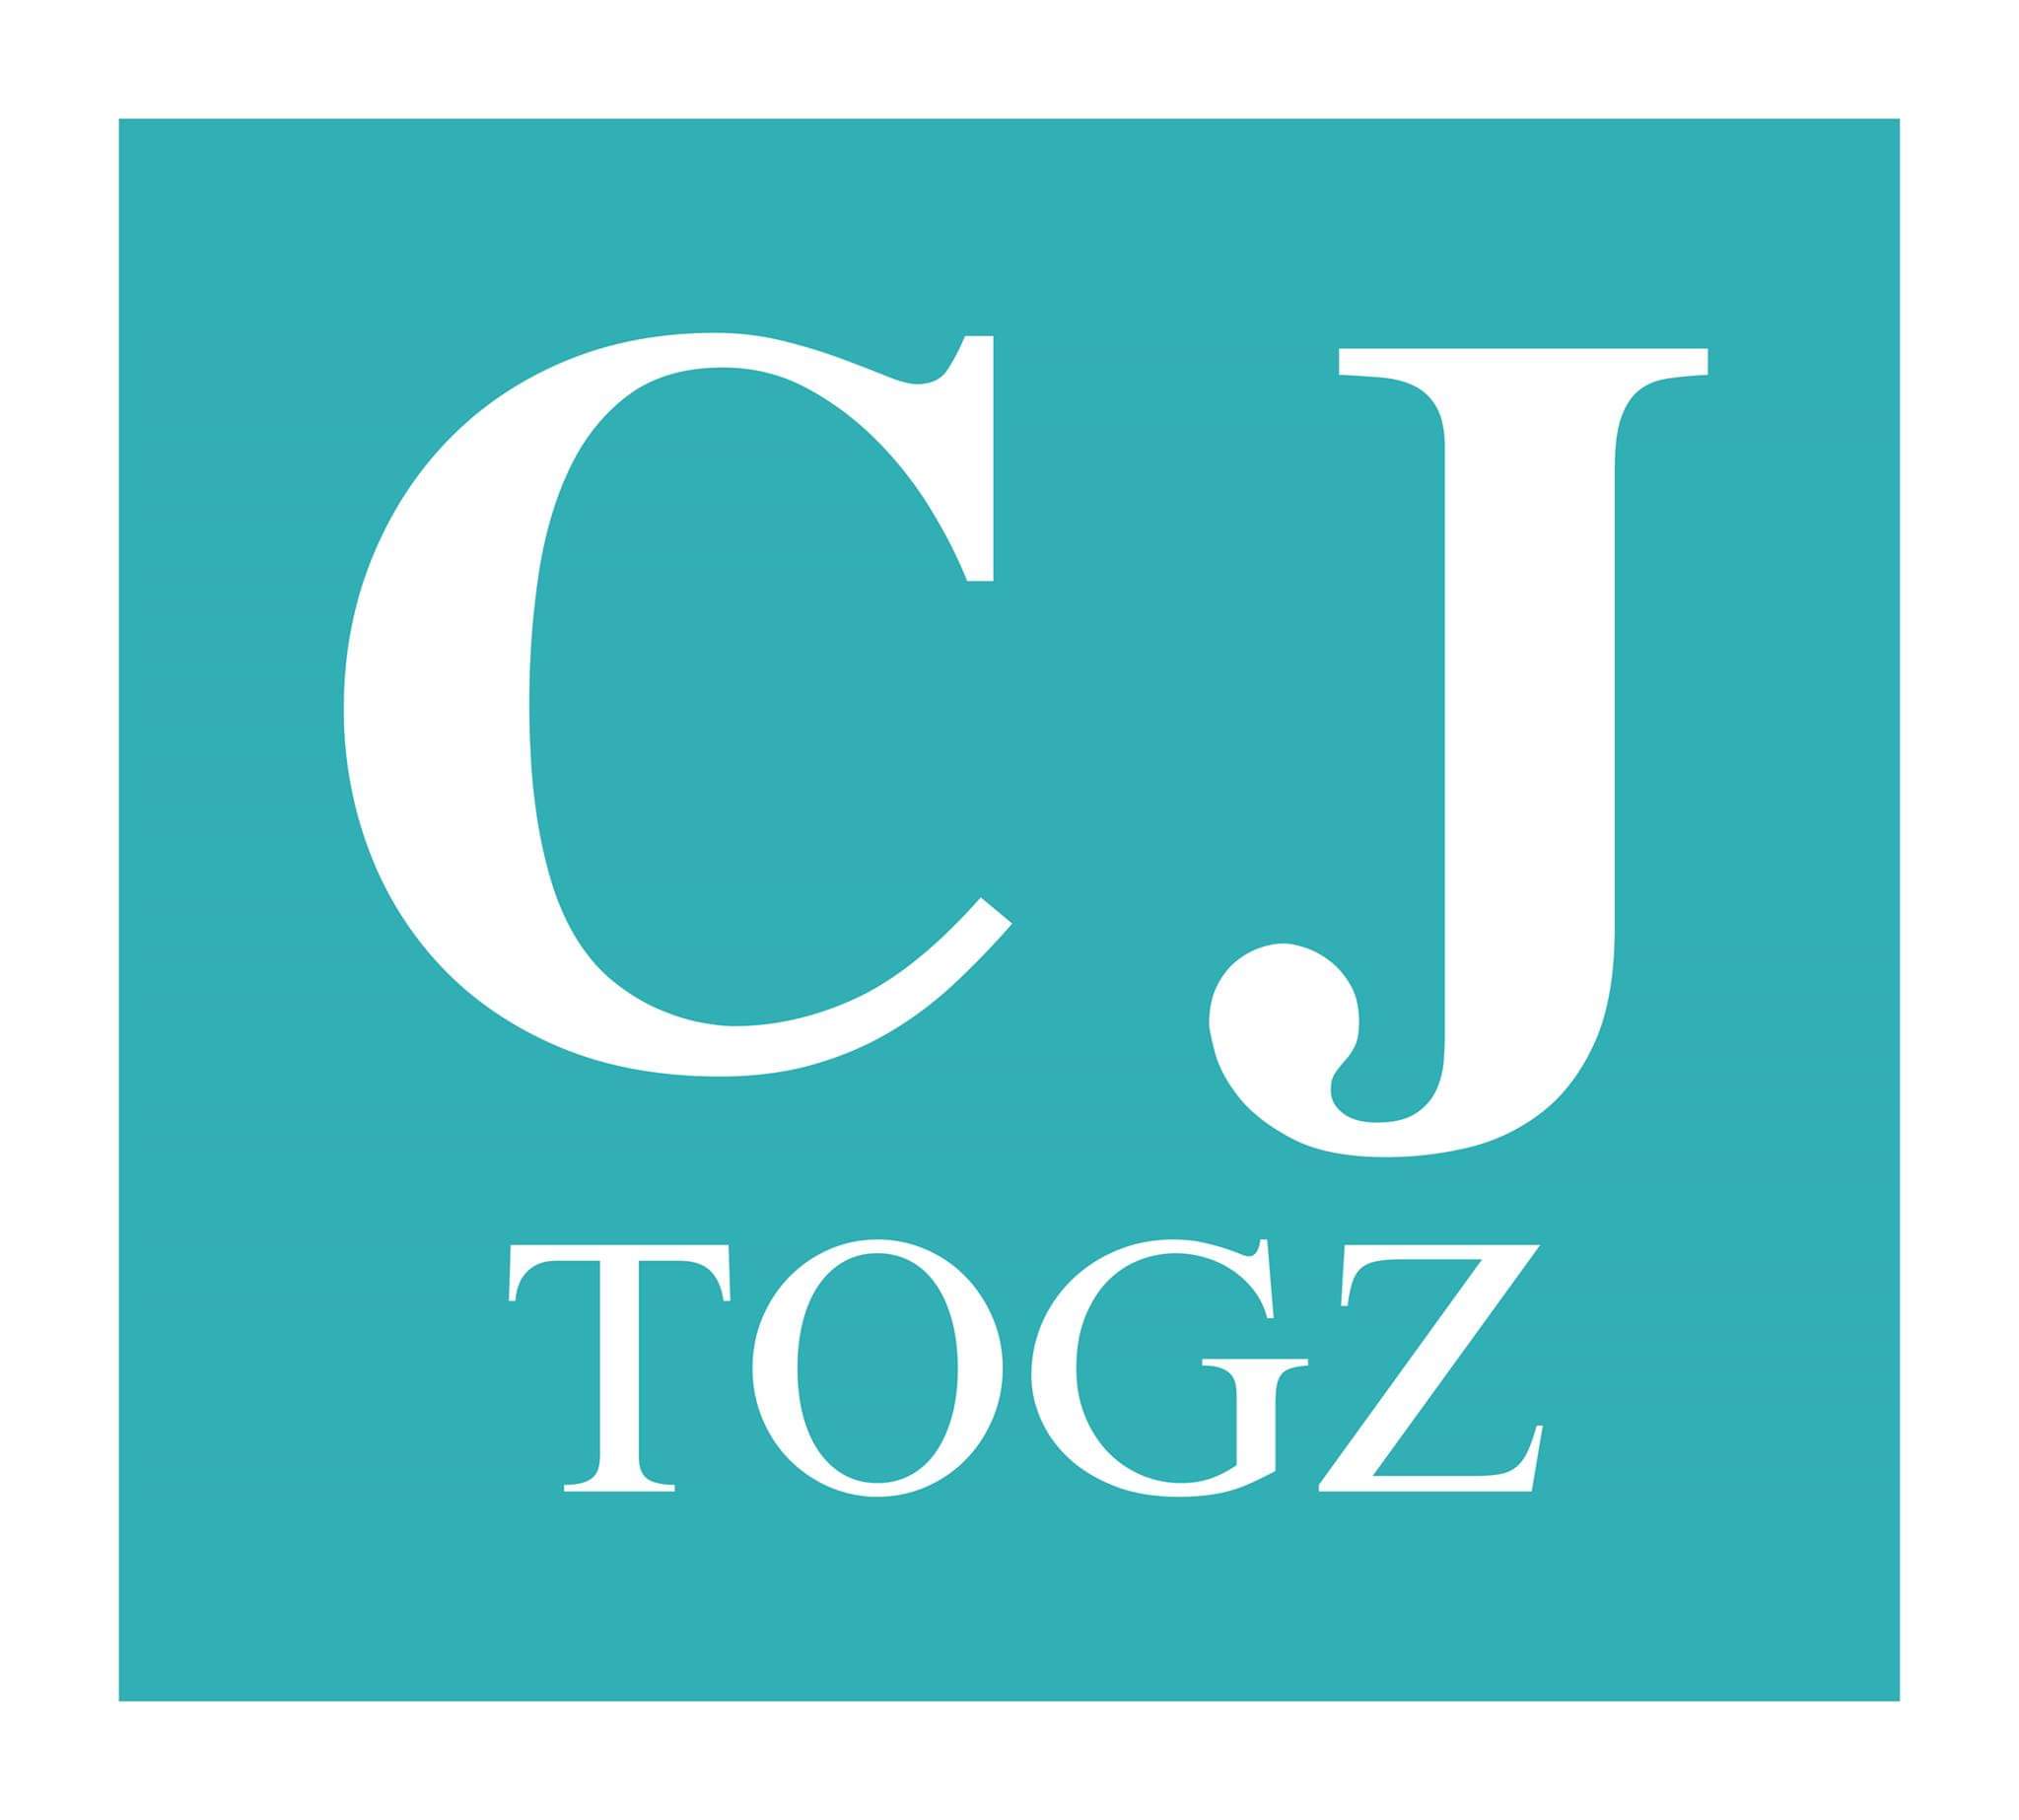 CJ Togz